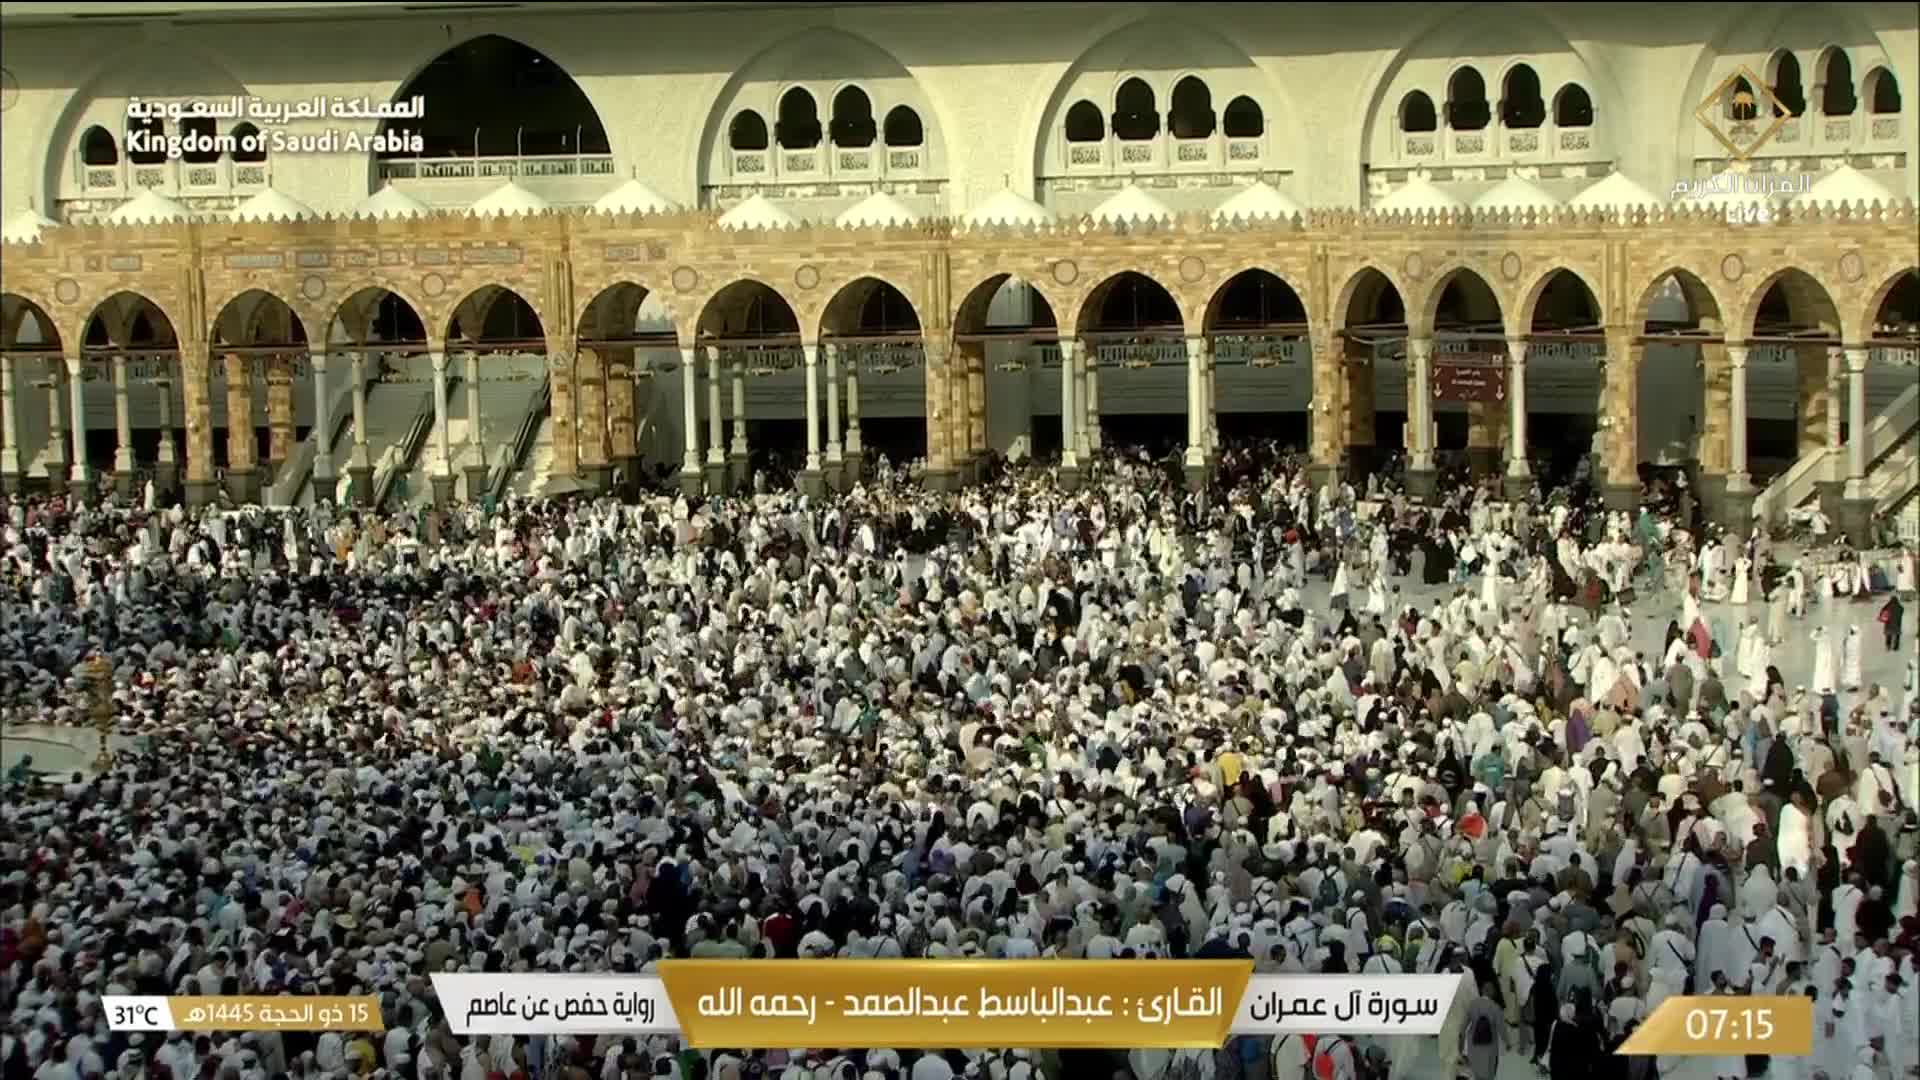 La Mecque Di. 07:36